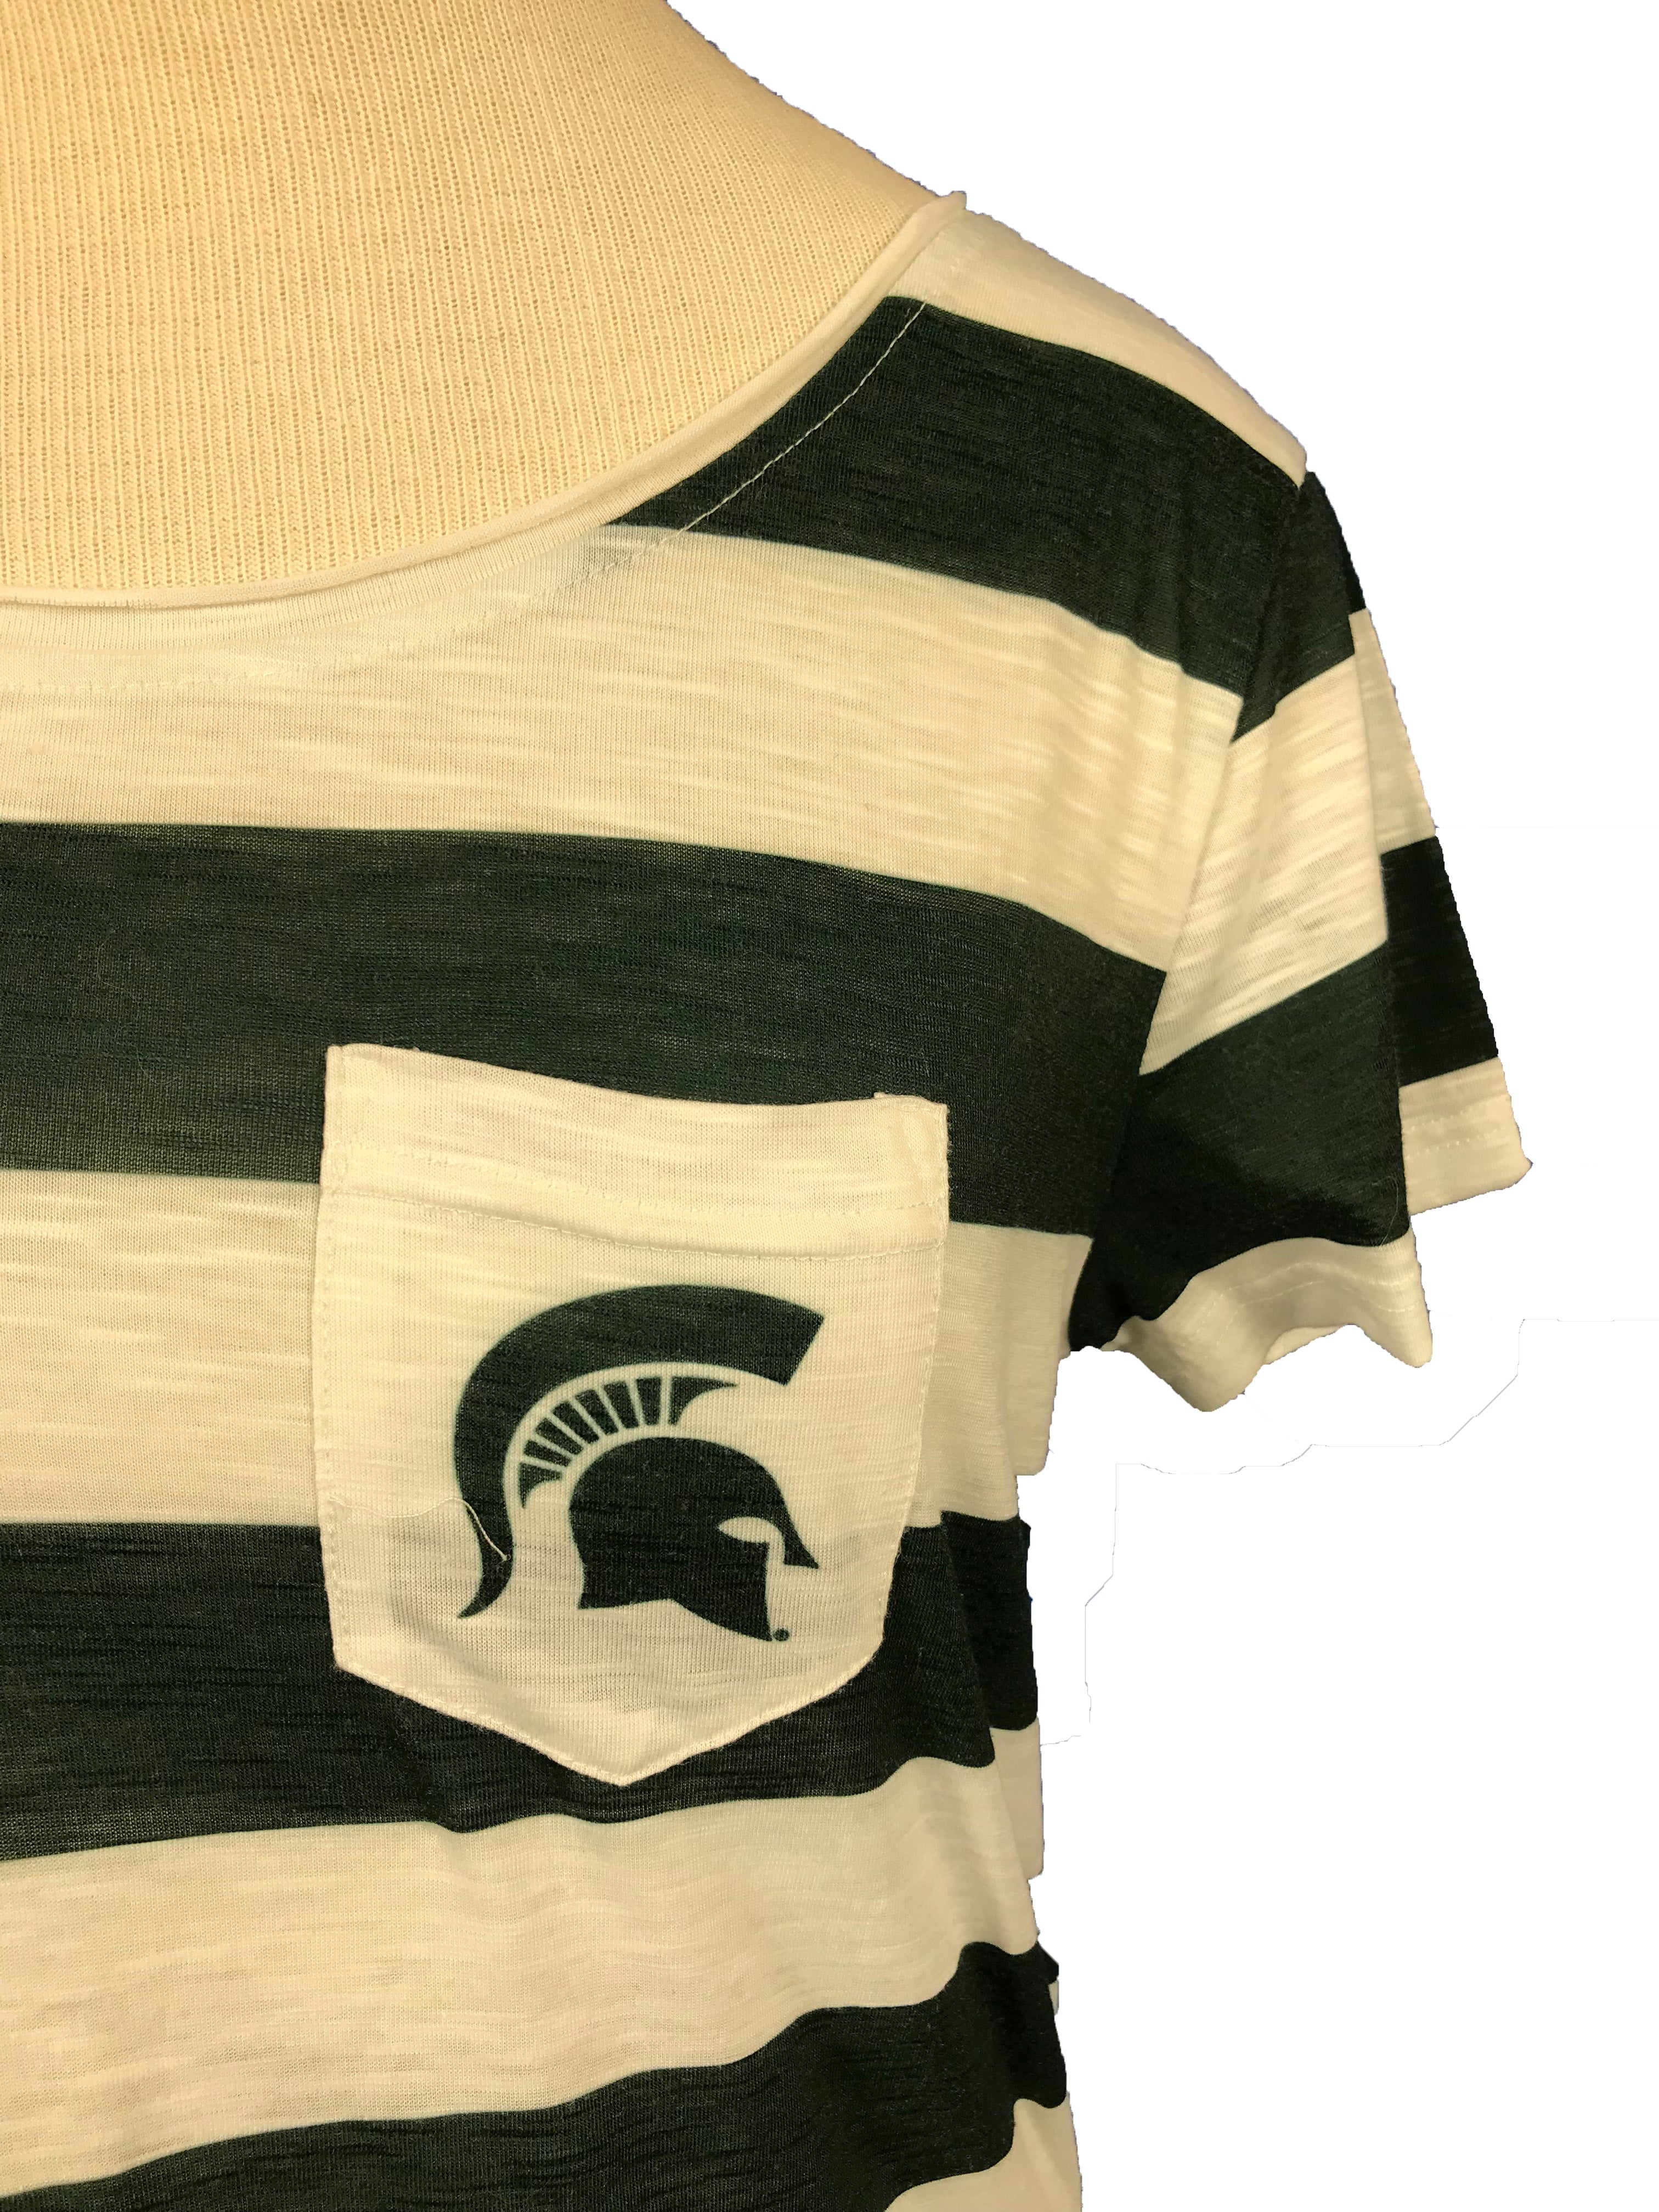 Michigan State University Striped T-Shirt Women's Size L